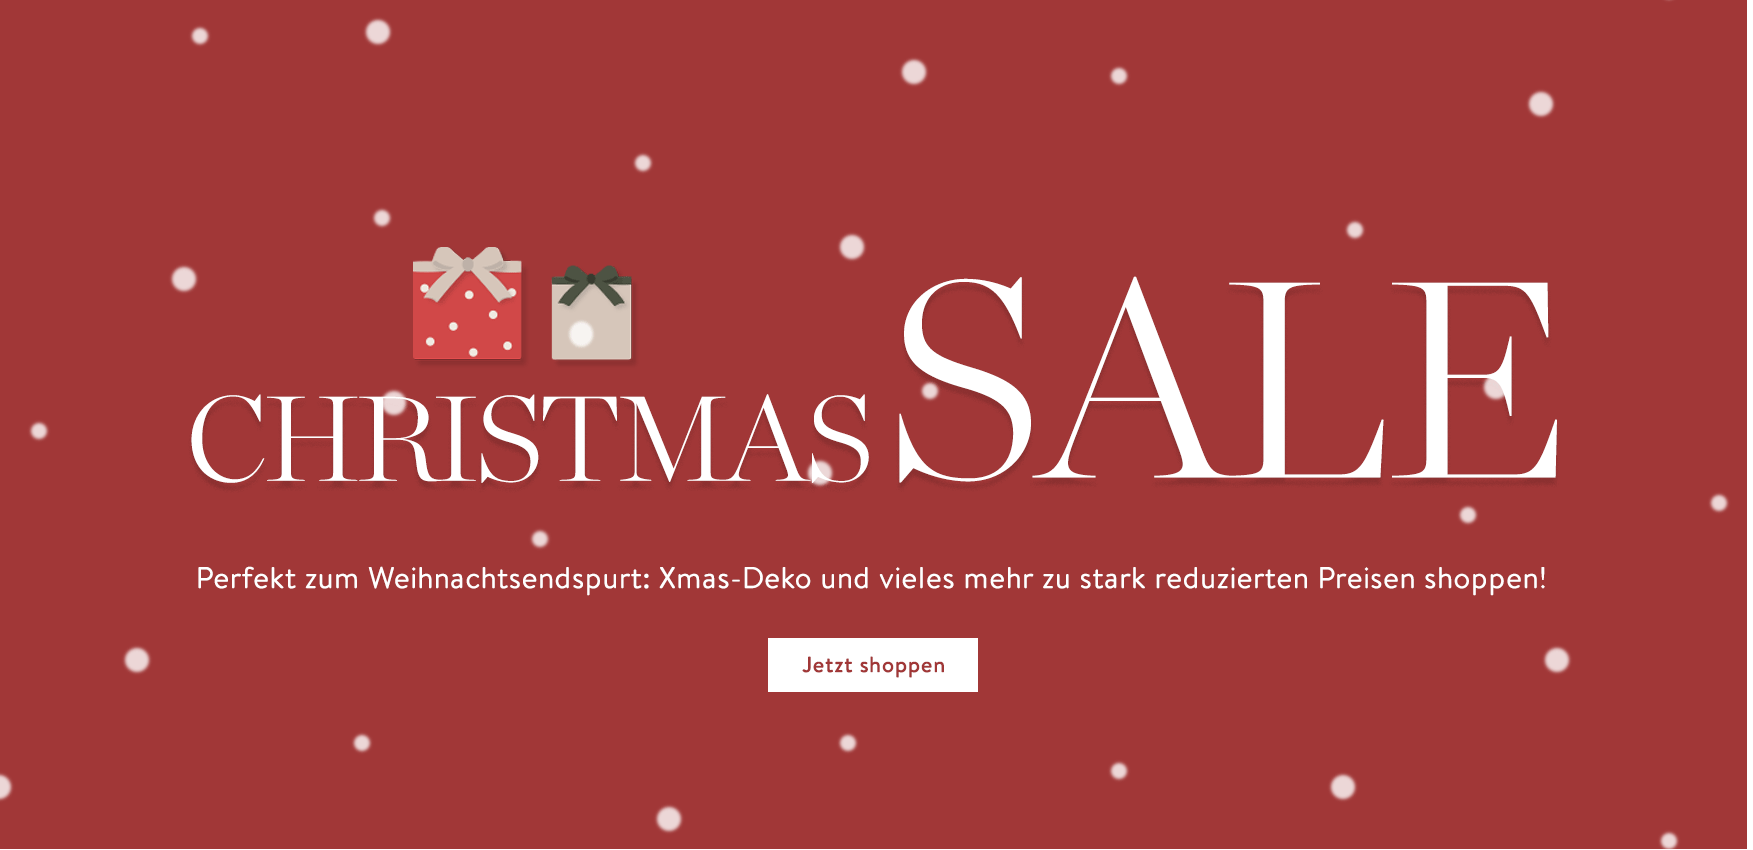 Christmas SALE Jetzt noch schnell Weihnachtsdeko und Festliches zu eiskalt reduzierten Preisen sichern. Merry Shopping!